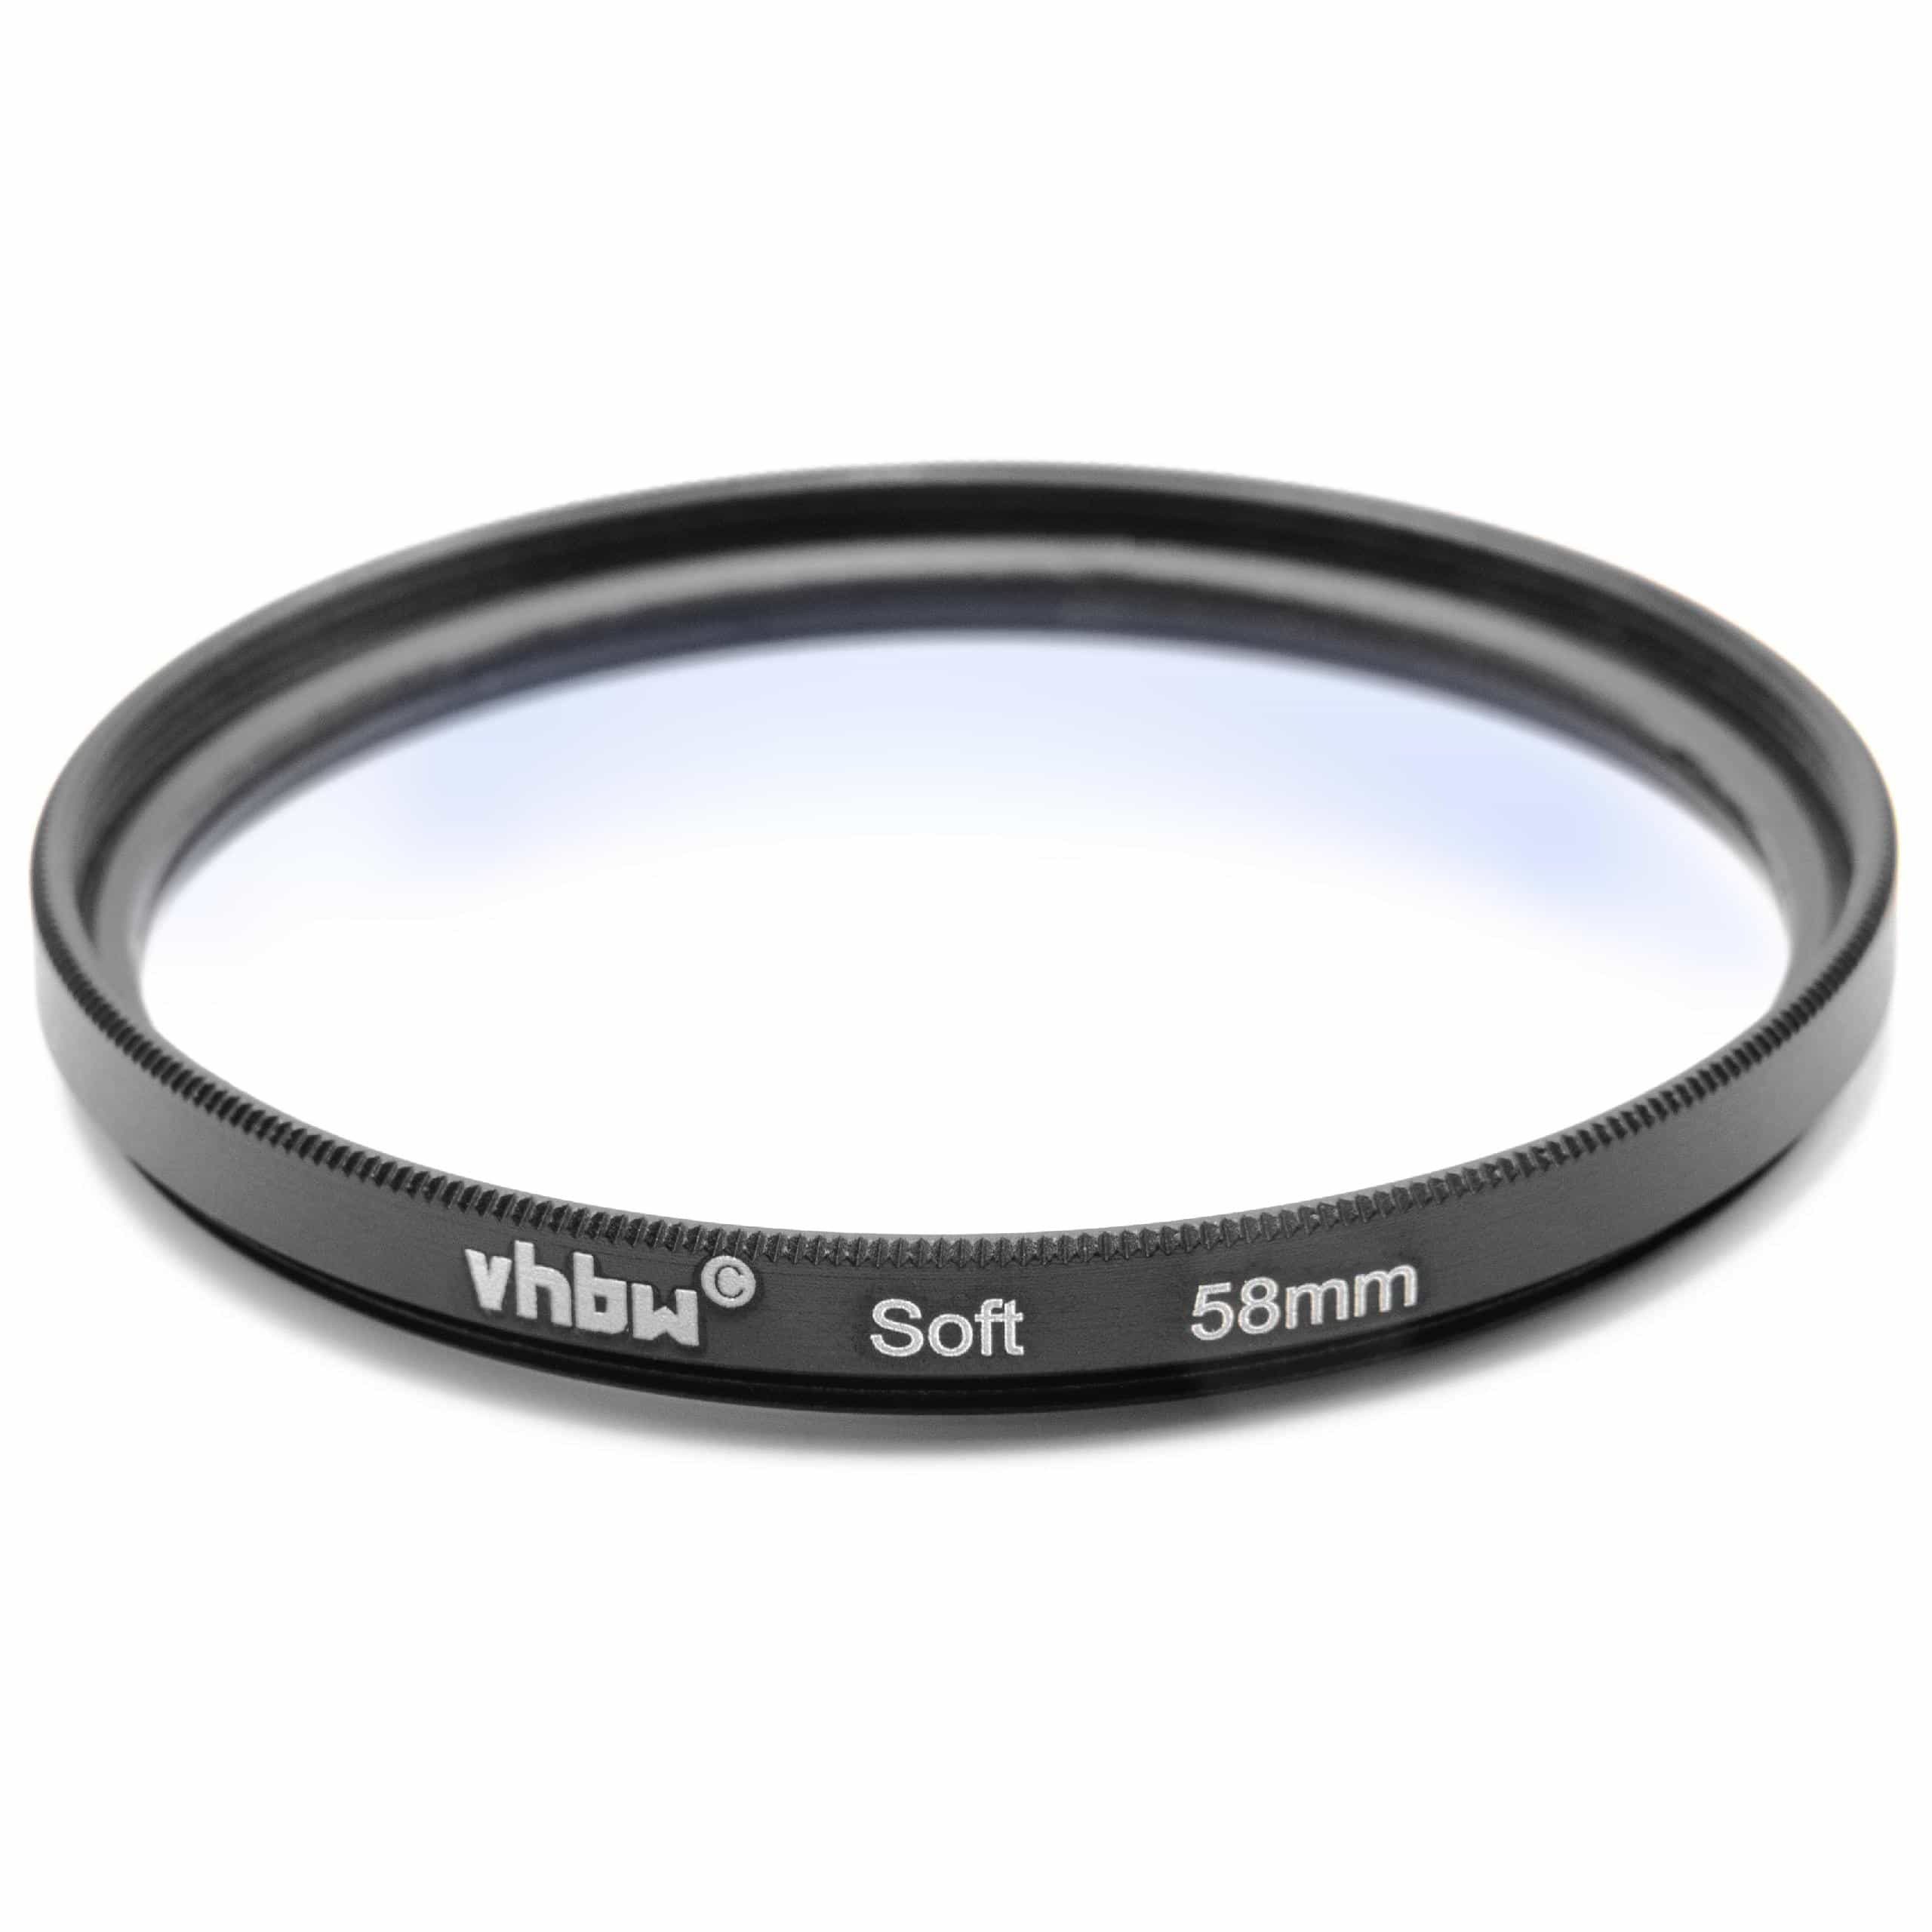 Filtr dyfuzyjny 58mm na obiektyw do różnych aparatów - filtr soft focus